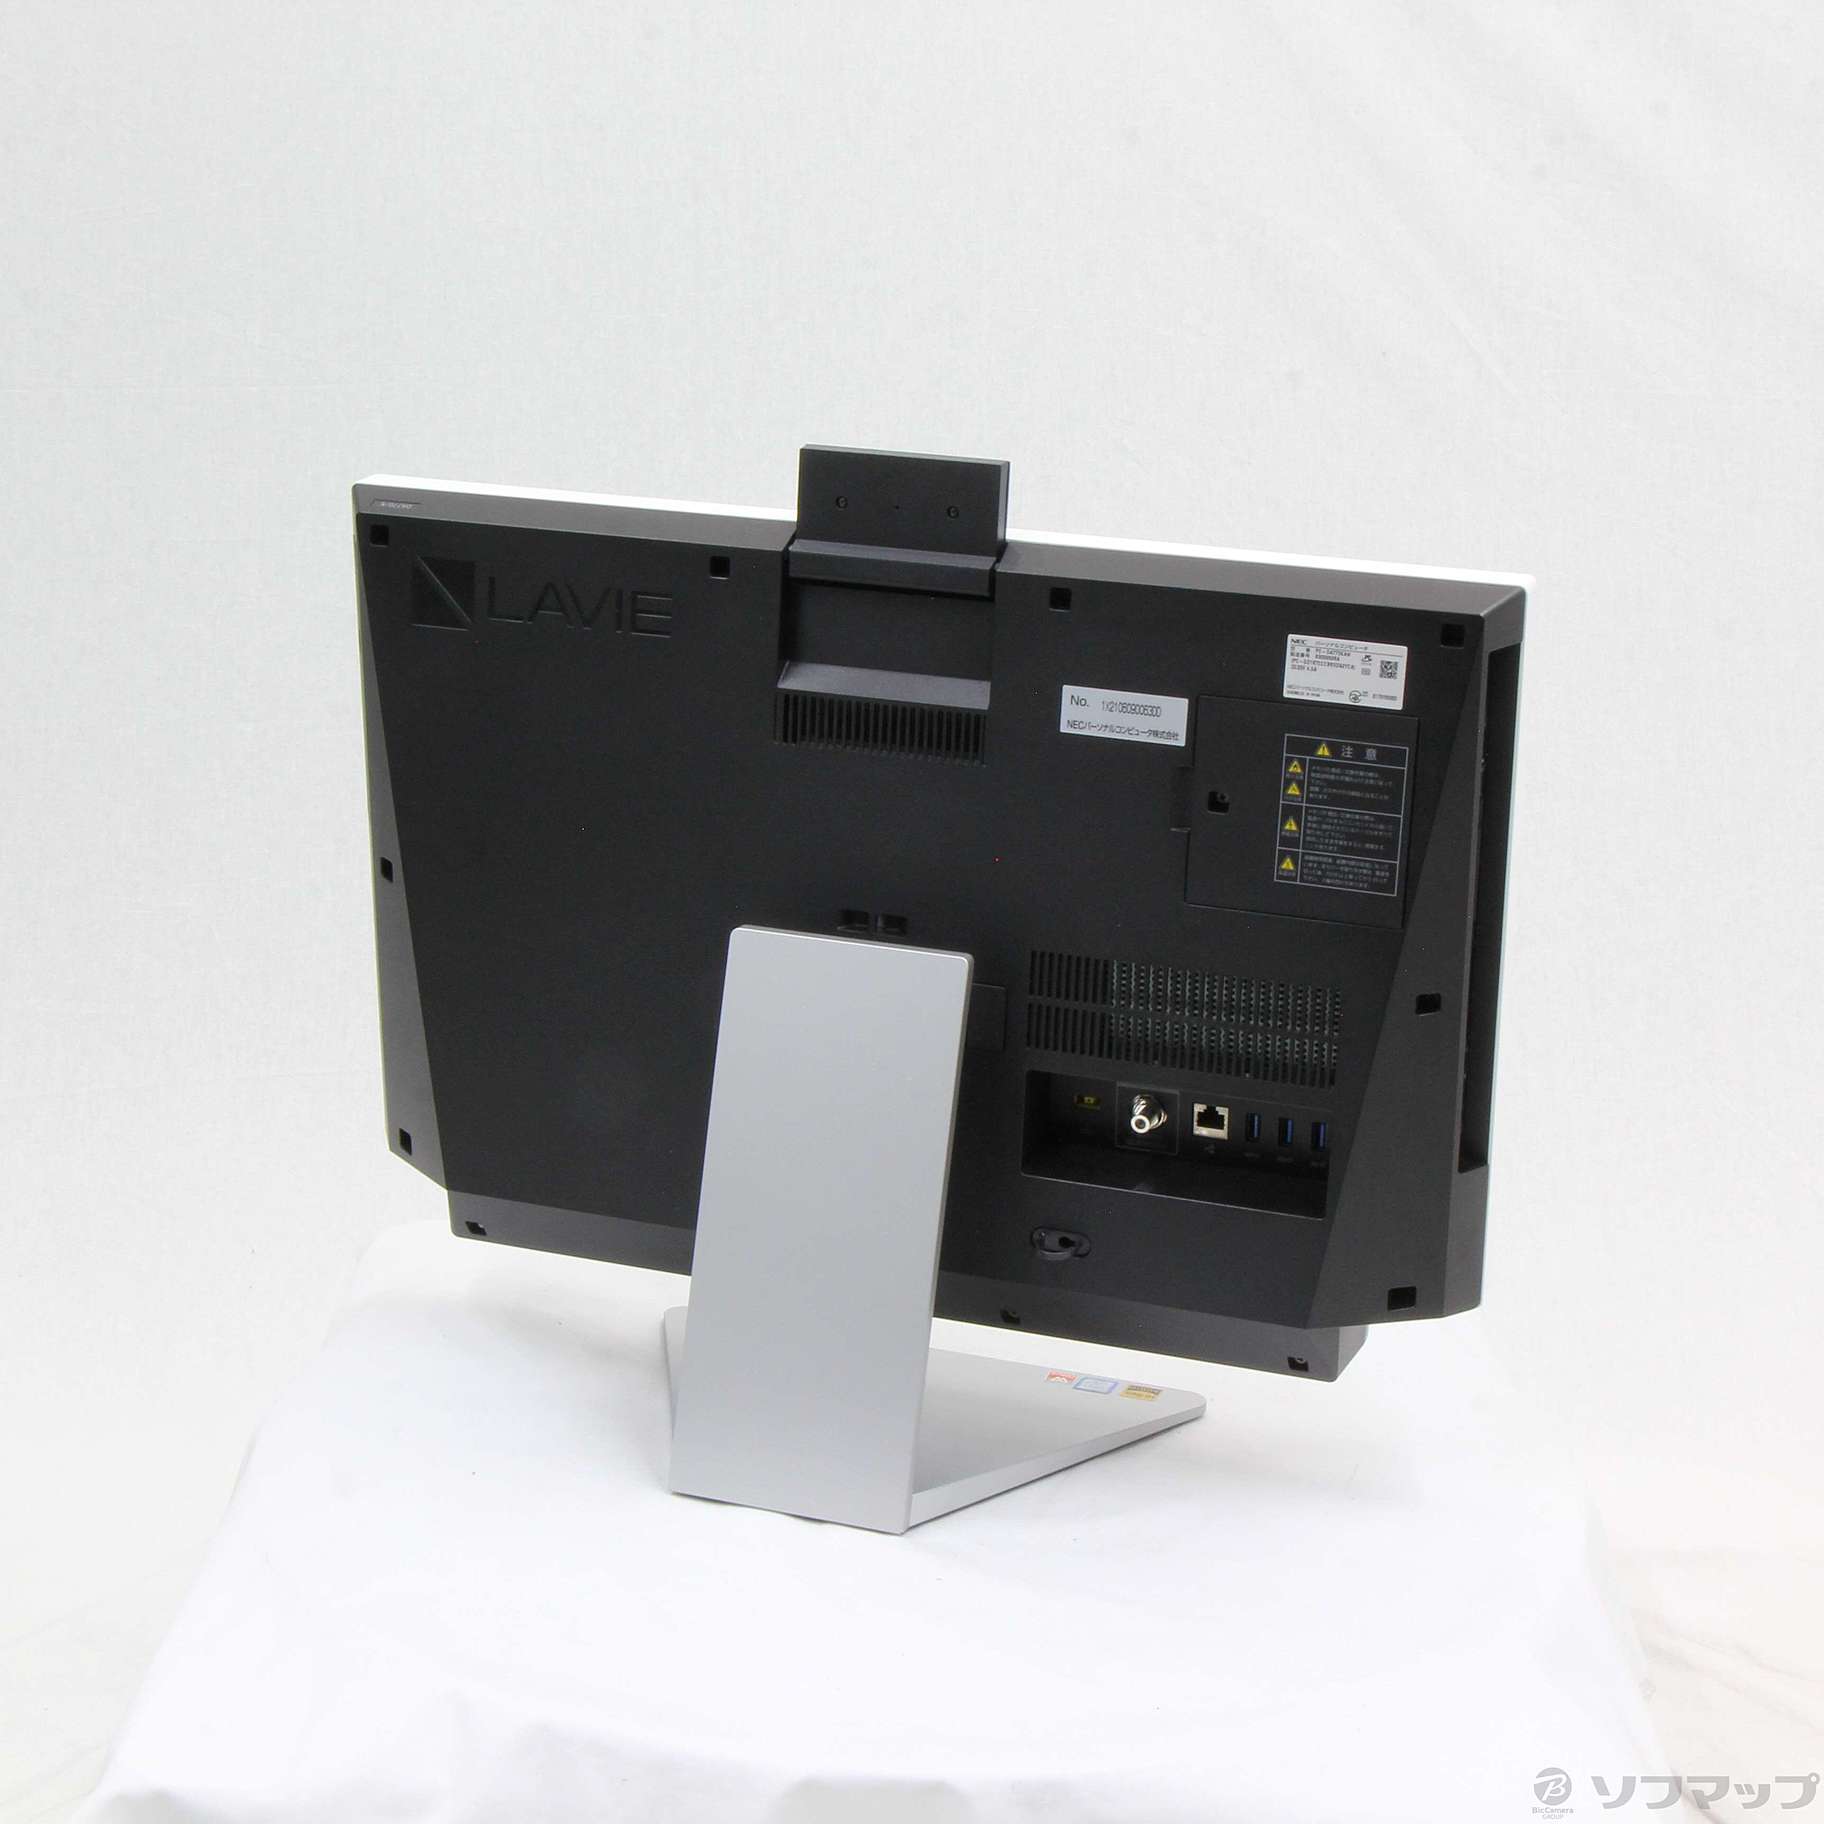 NEC PC-DA770KAW LAVIE Desk All-in-one-